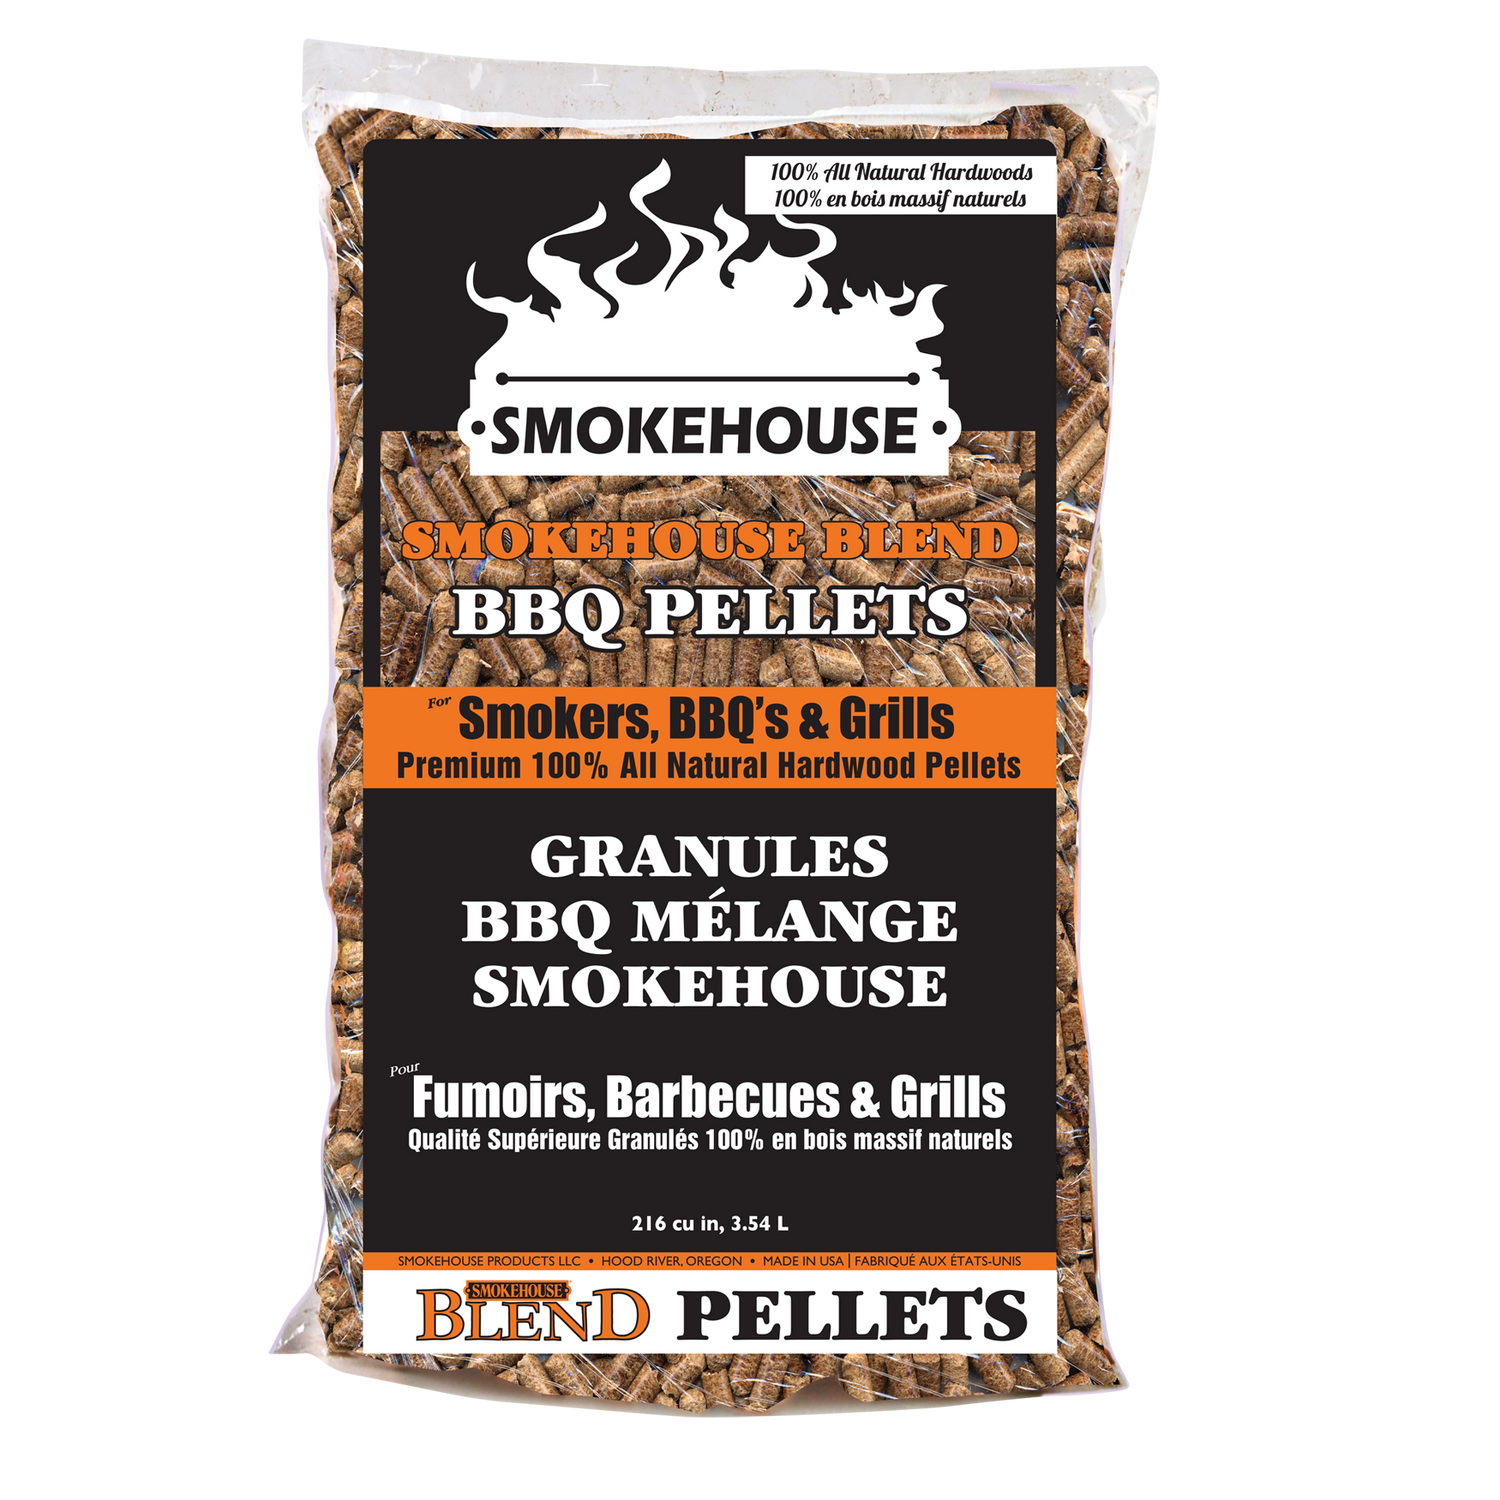 Smokehouse Blend BBQ Pellets